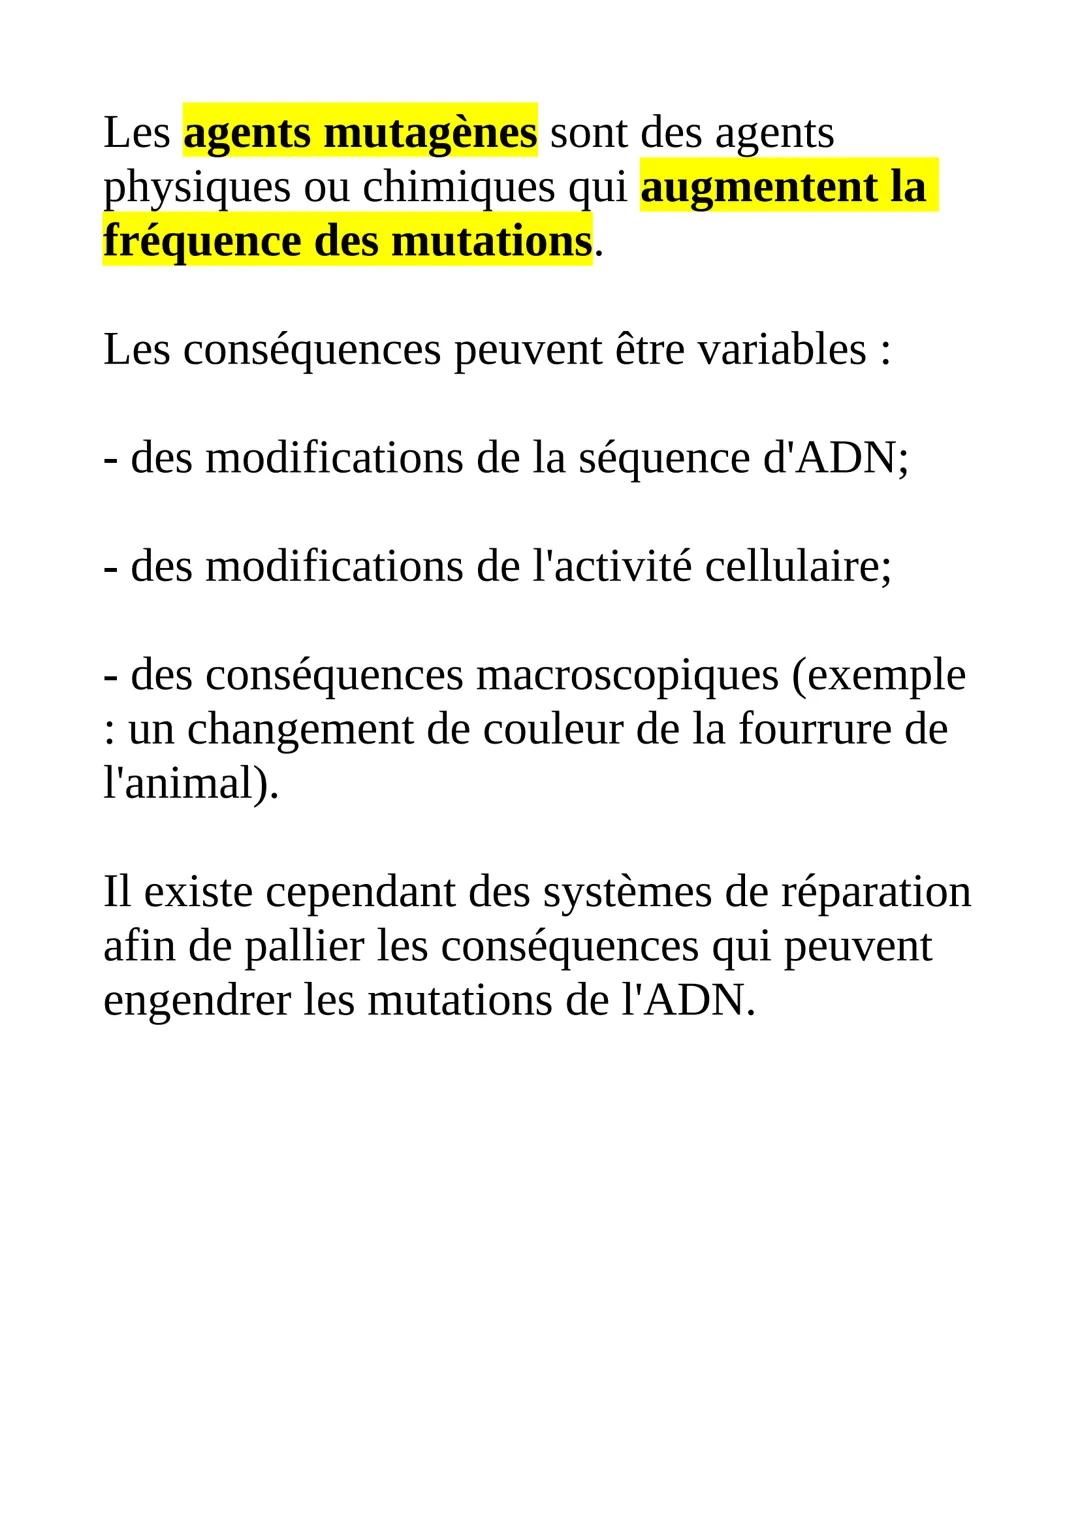 
<h2 id="typesdemutations">Types de mutations</h2>
<p>Les mutations se produisent le plus souvent lors de la réplication, appelées mutations